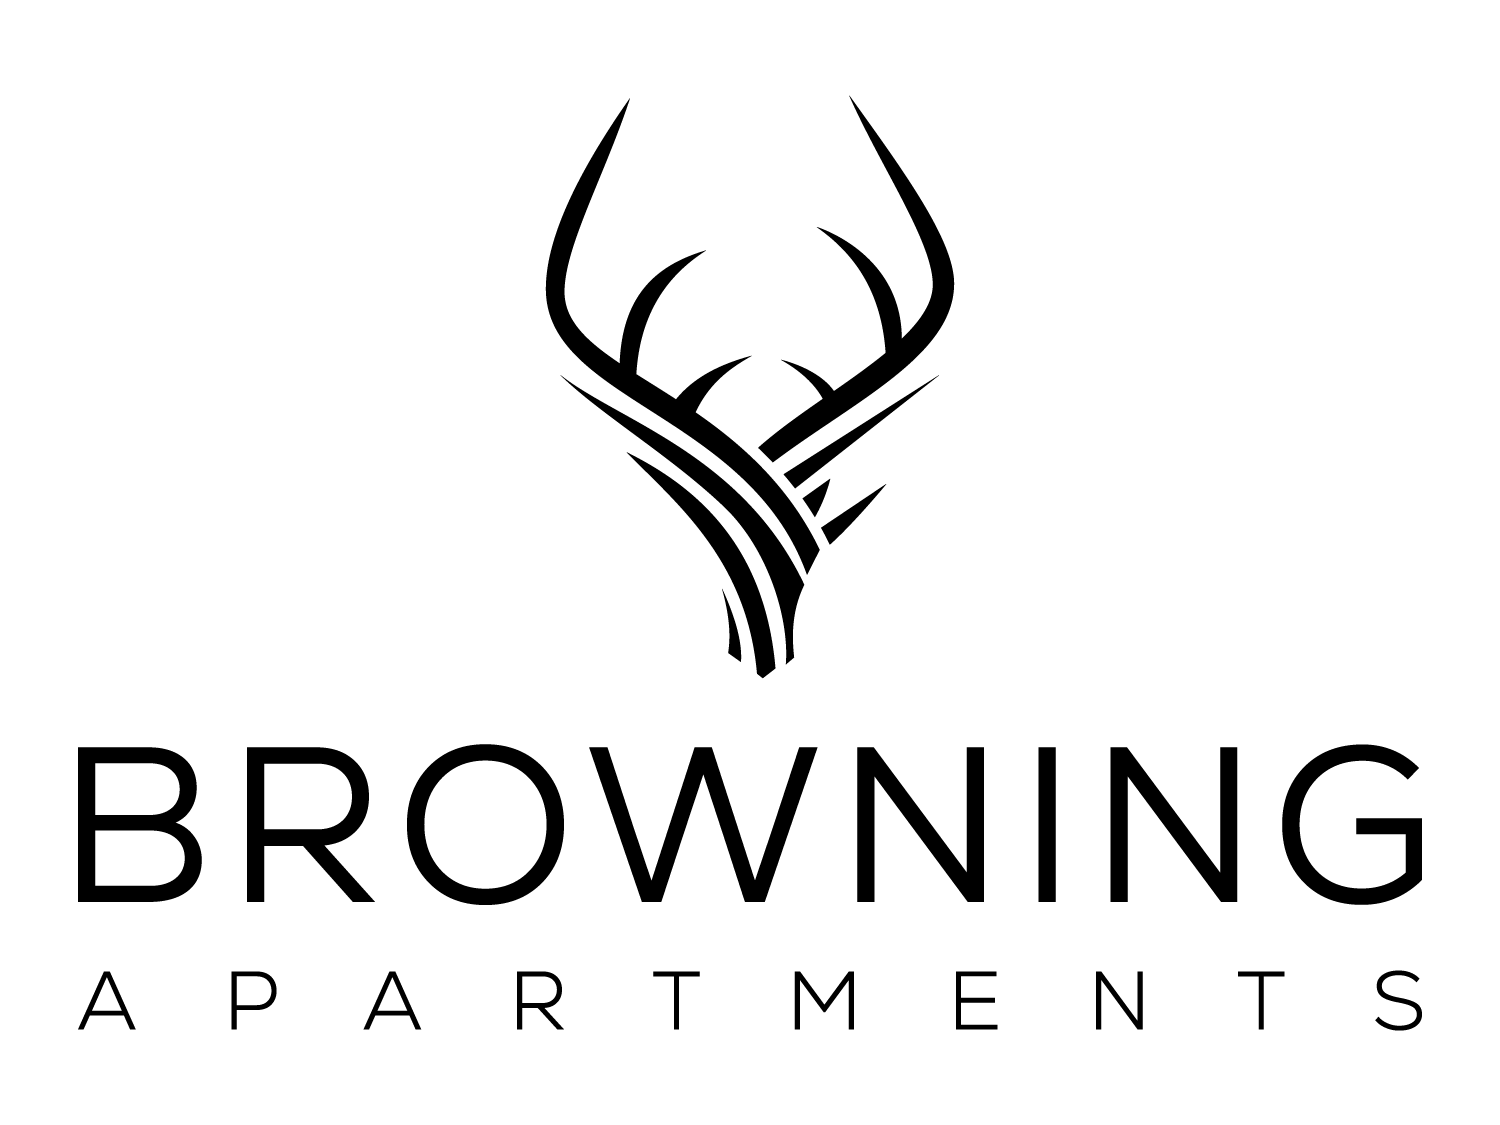 Browning Apartments logo